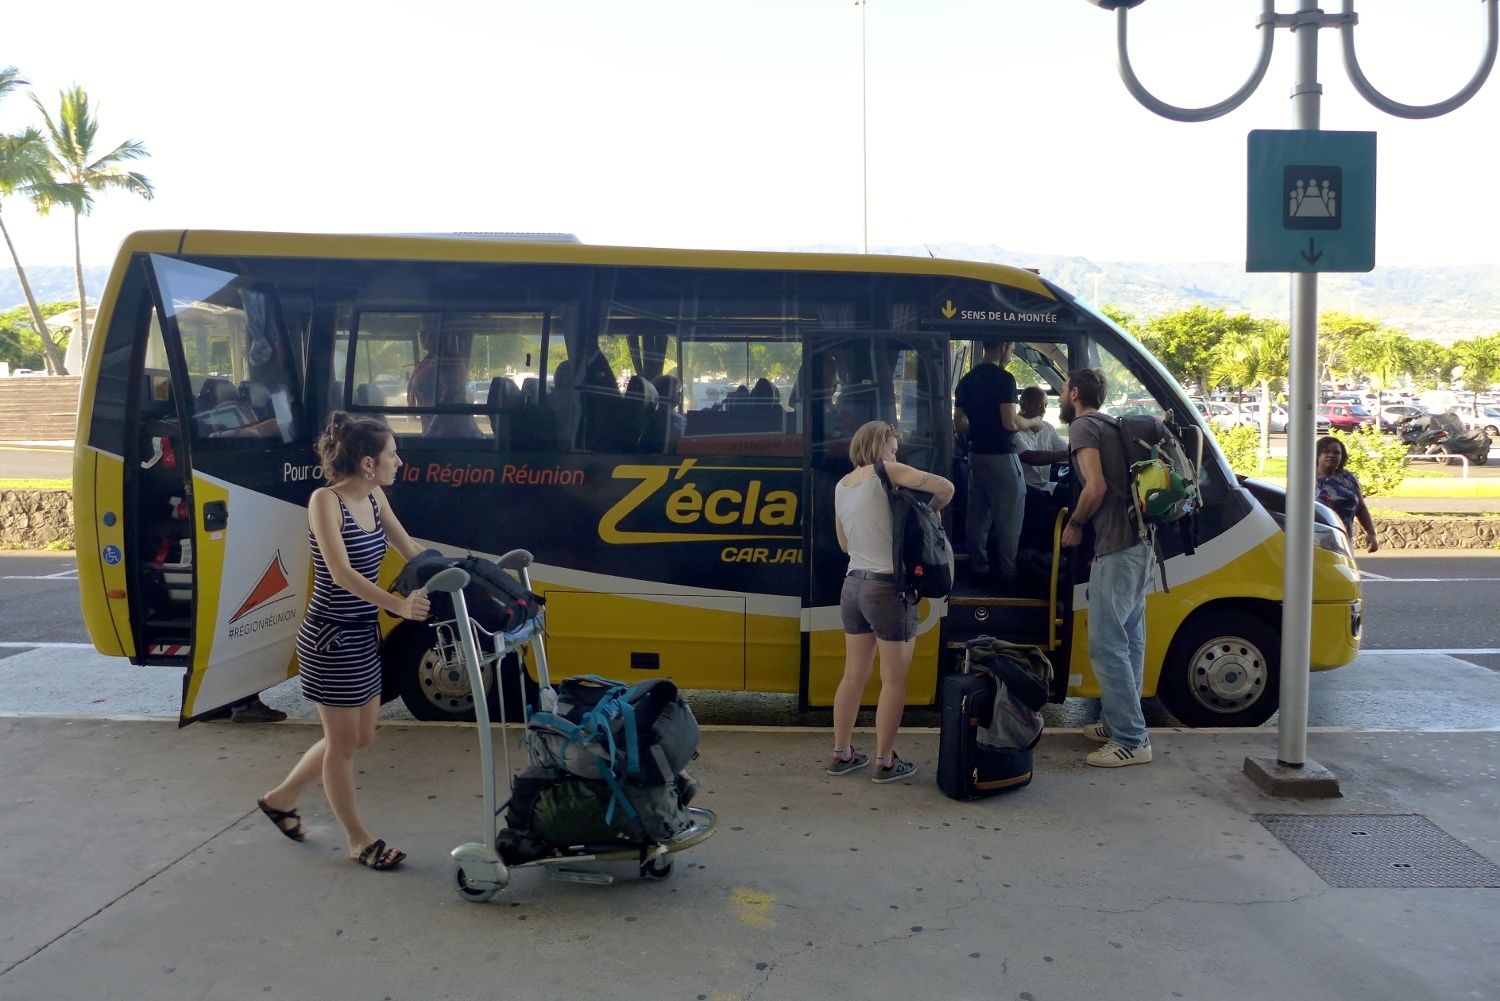 Une fois la valise récupérée, direction la ville de Saint-Louis au sud de l’île. Sidonie prend le « bus jaune », qui relie l’aéroport à Saint-Pierre. Elle doit descendre à la gare de Saint-Louis.